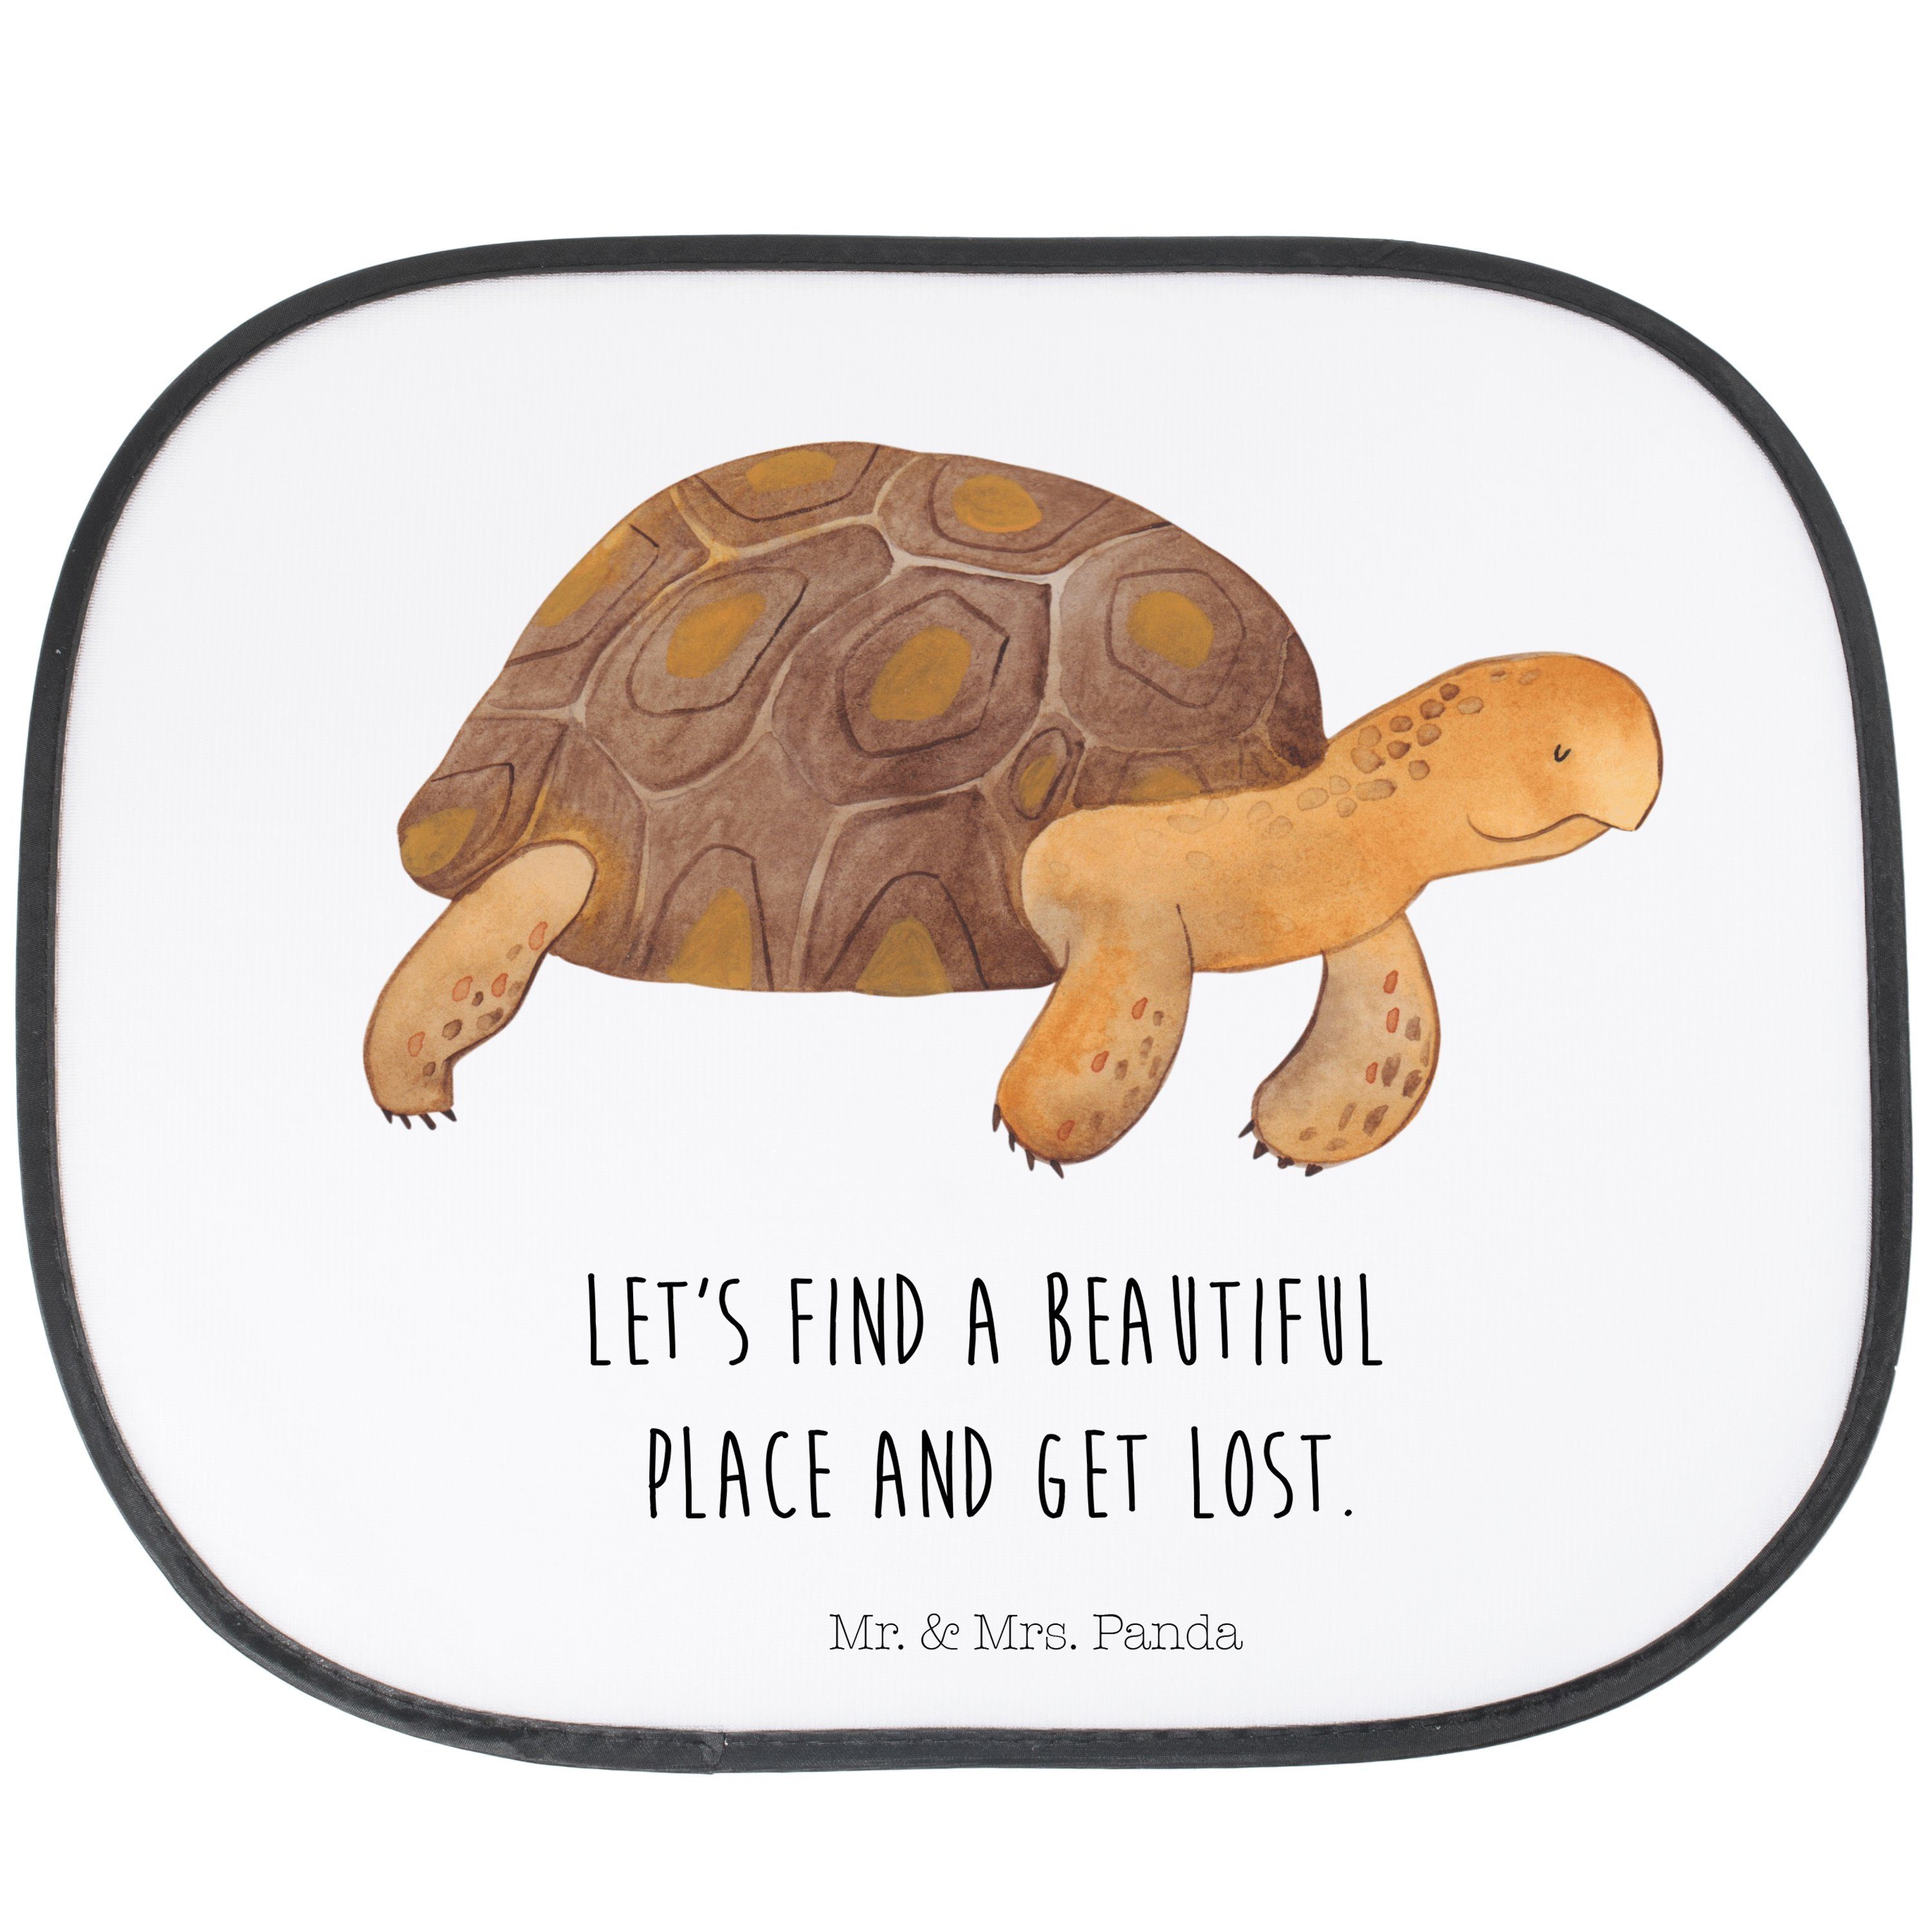 Sonnenschutz Schildkröte marschiert - Weiß - Geschenk, Urlaub, Neustart, Auto Sonn, Mr. & Mrs. Panda, Seidenmatt